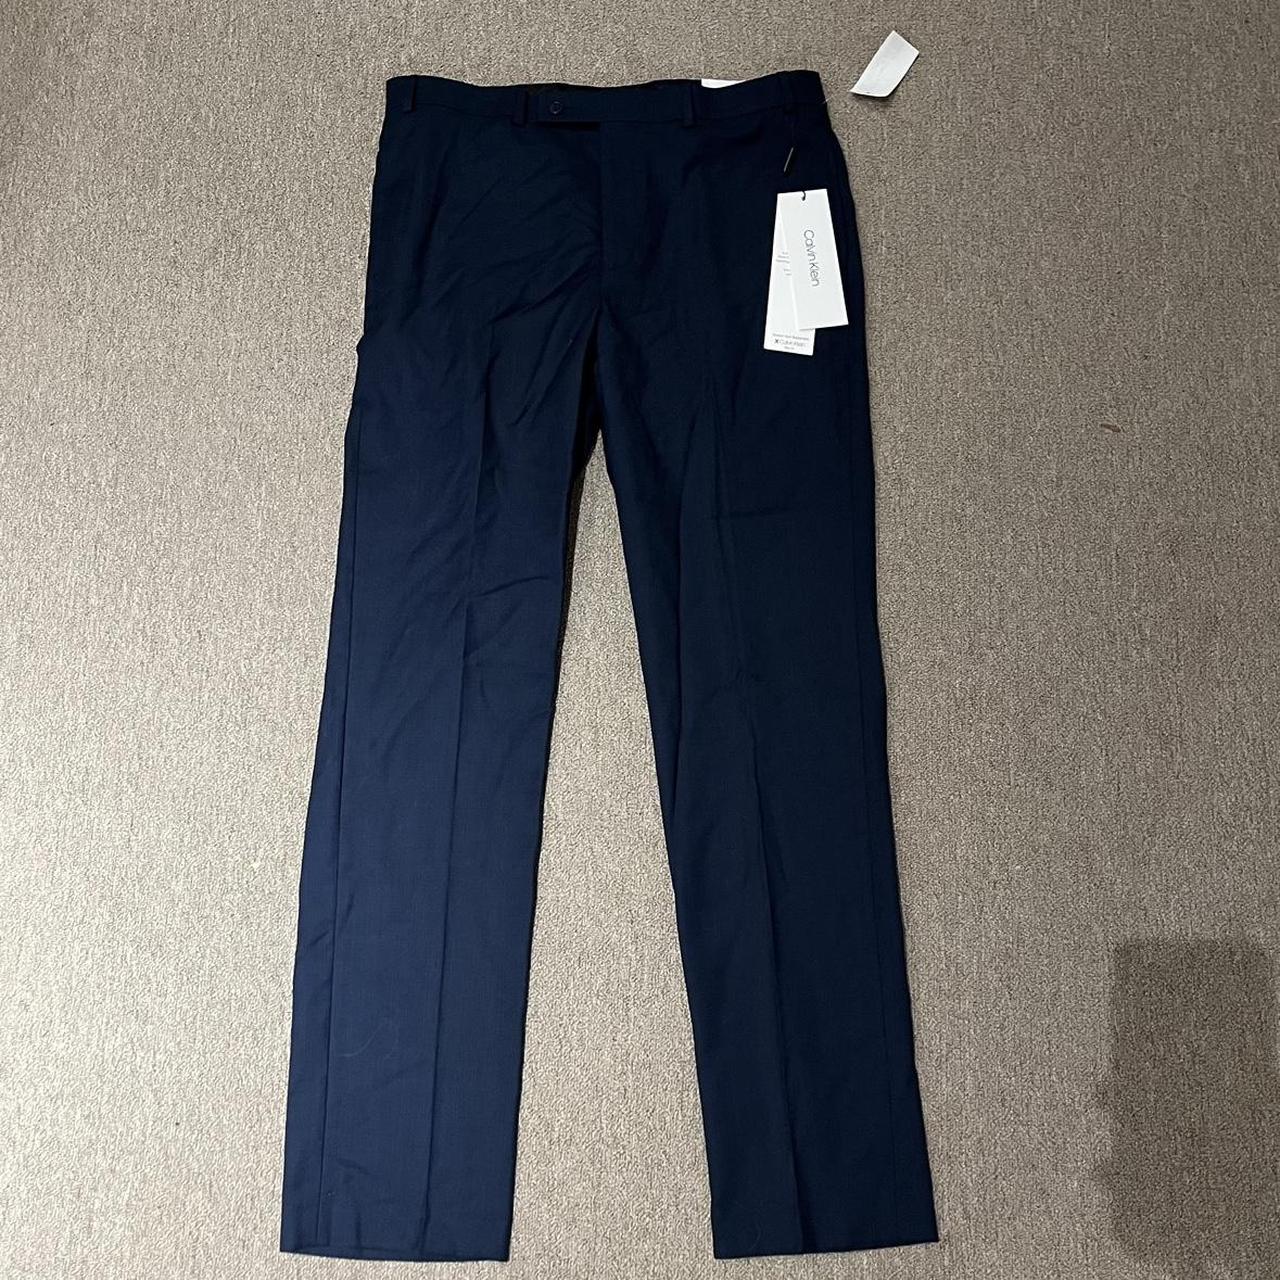 Calvin Klein Men's Slim Fit Suit Pants Navy Blue Size 30x32 | eBay